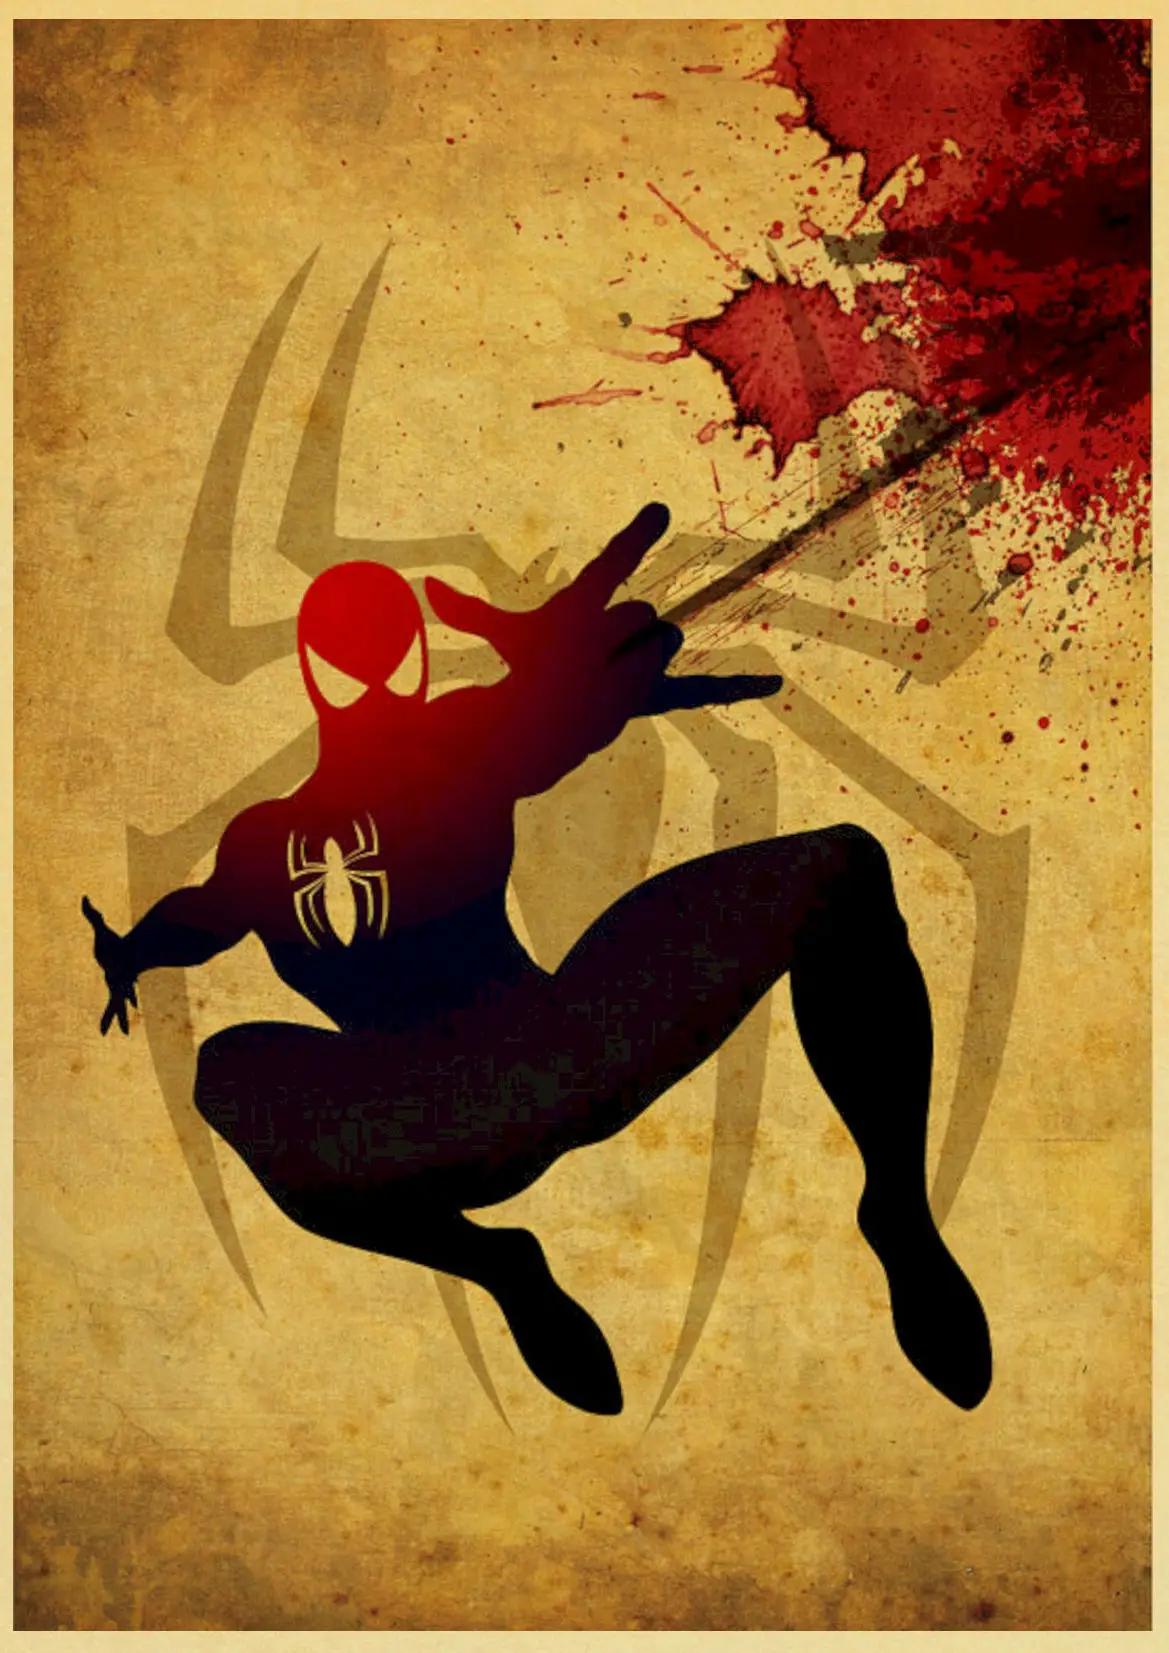 Винтаж Marvel Dc Супер Герои плакат Железный человек Бэтмен художественные принты и плакаты для дома комнаты бар живопись наклейки на стену - Цвет: E145